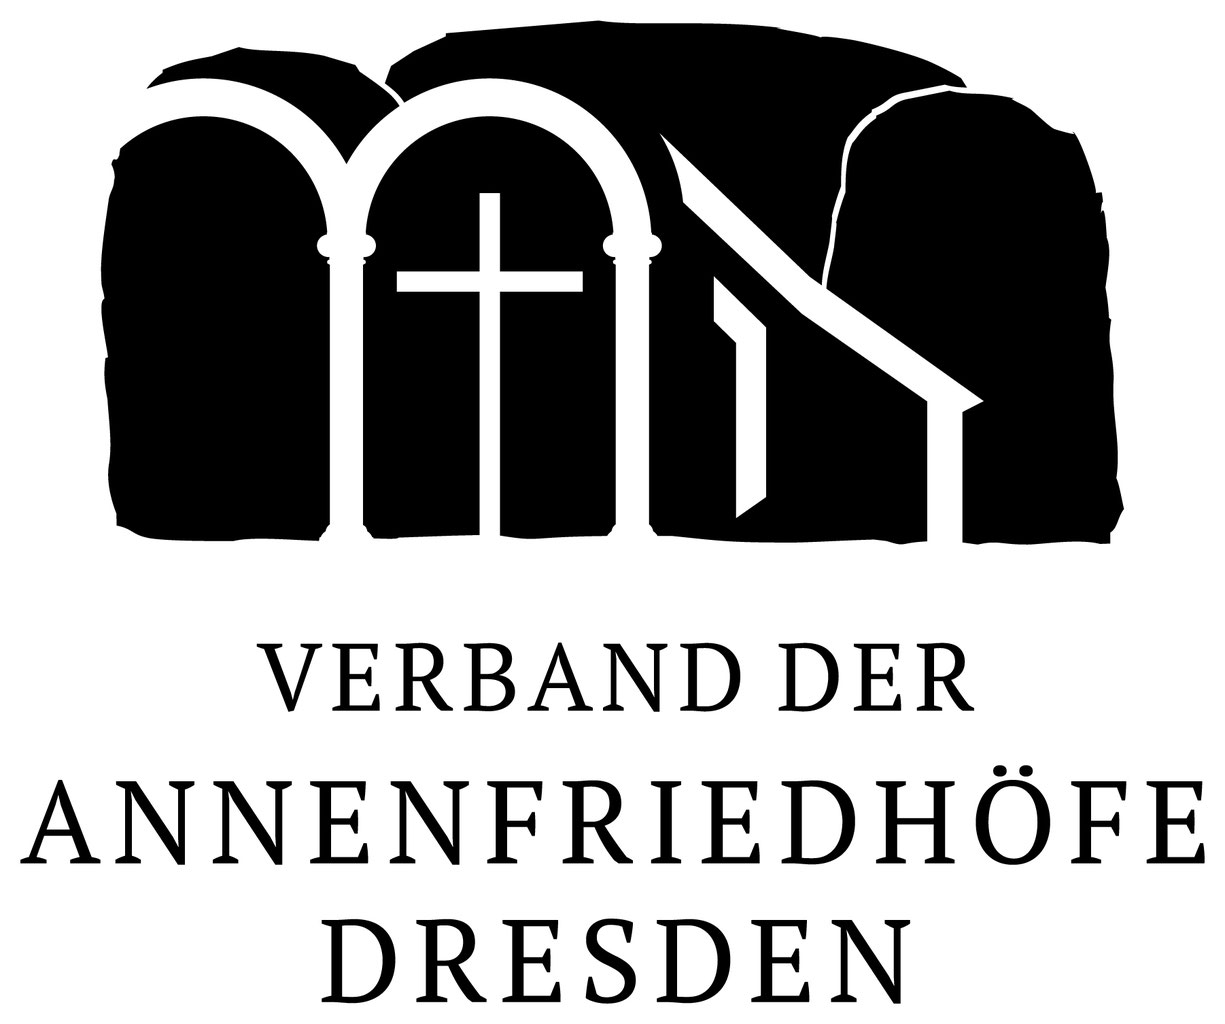 (c) Annenfriedhof-dresden.de